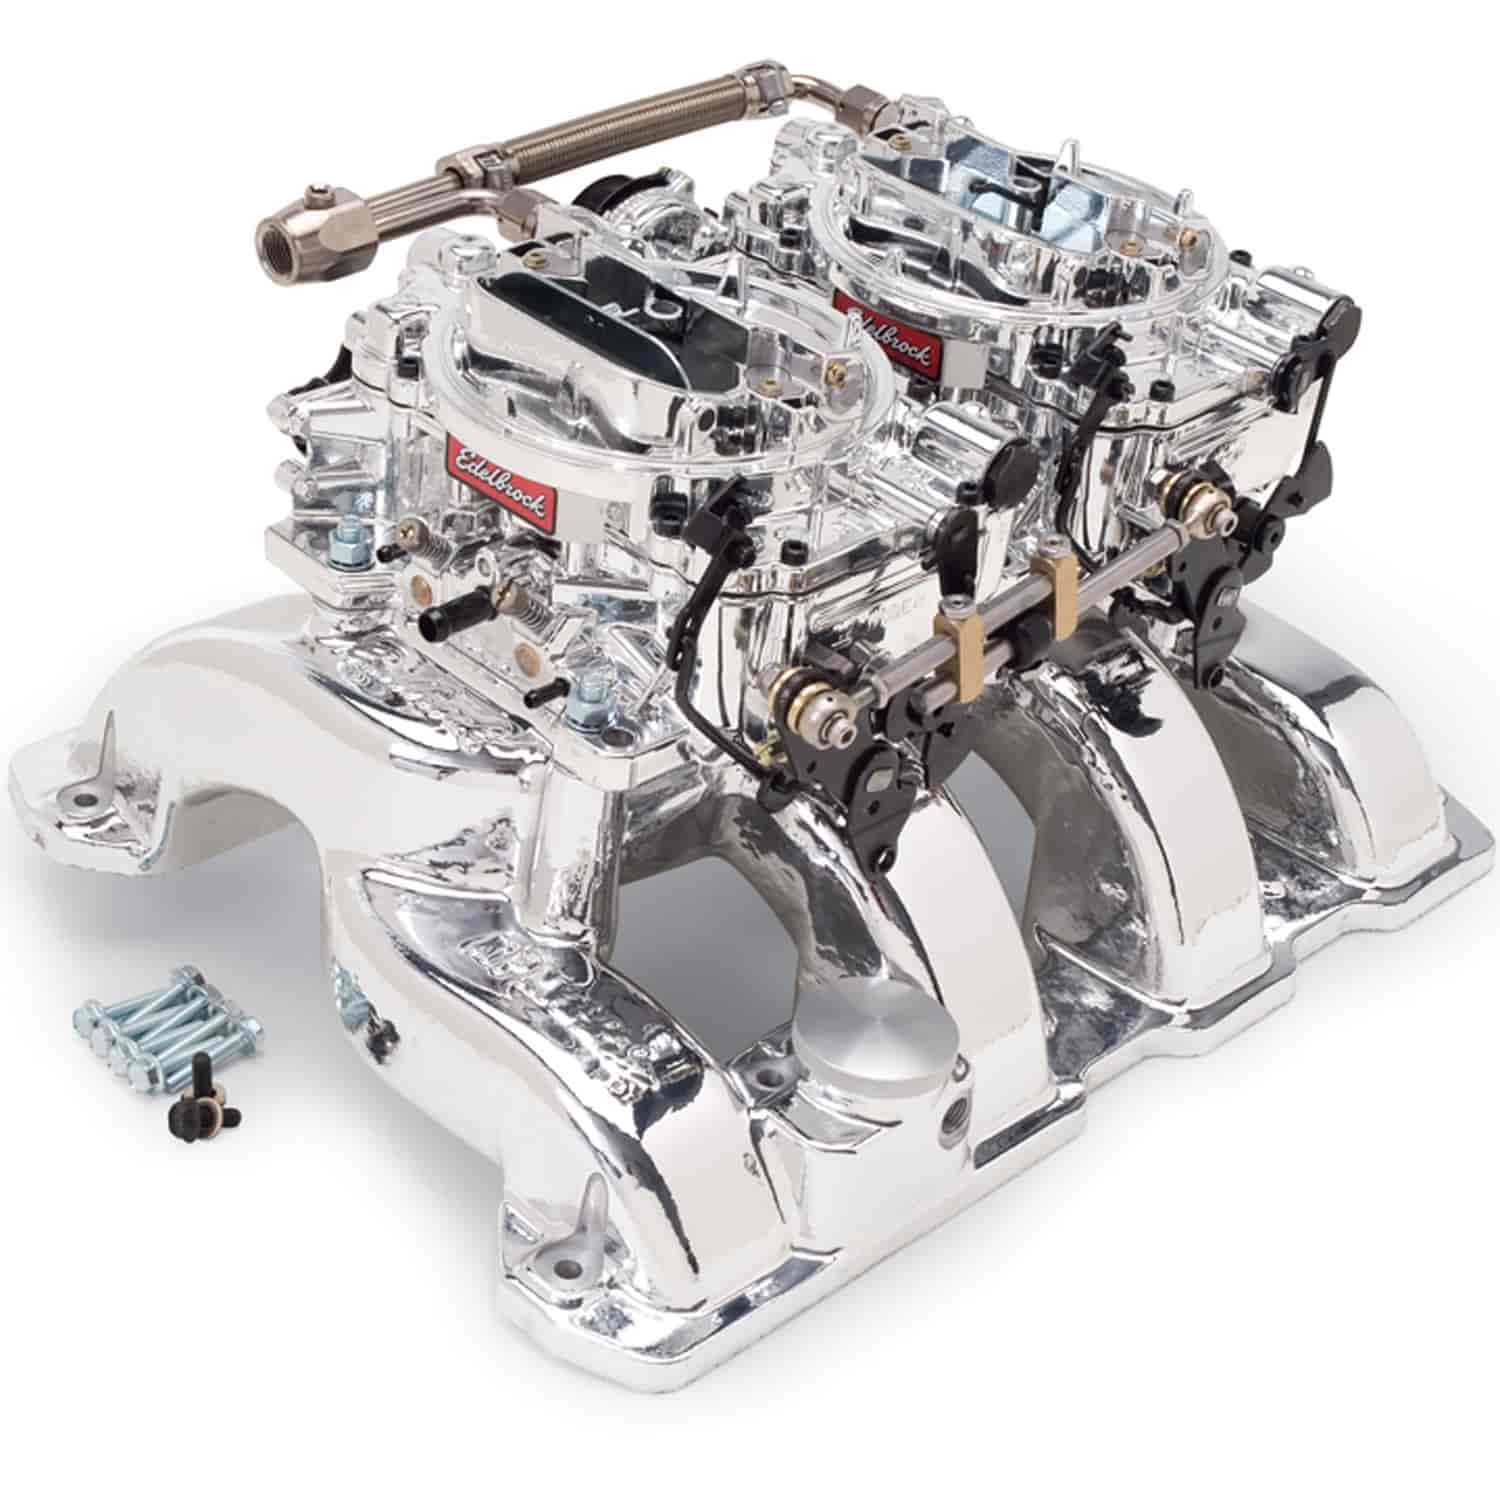 RPM Dual-Quad Manifold and Carburetor Kit for Chrysler 5.7L HEMI